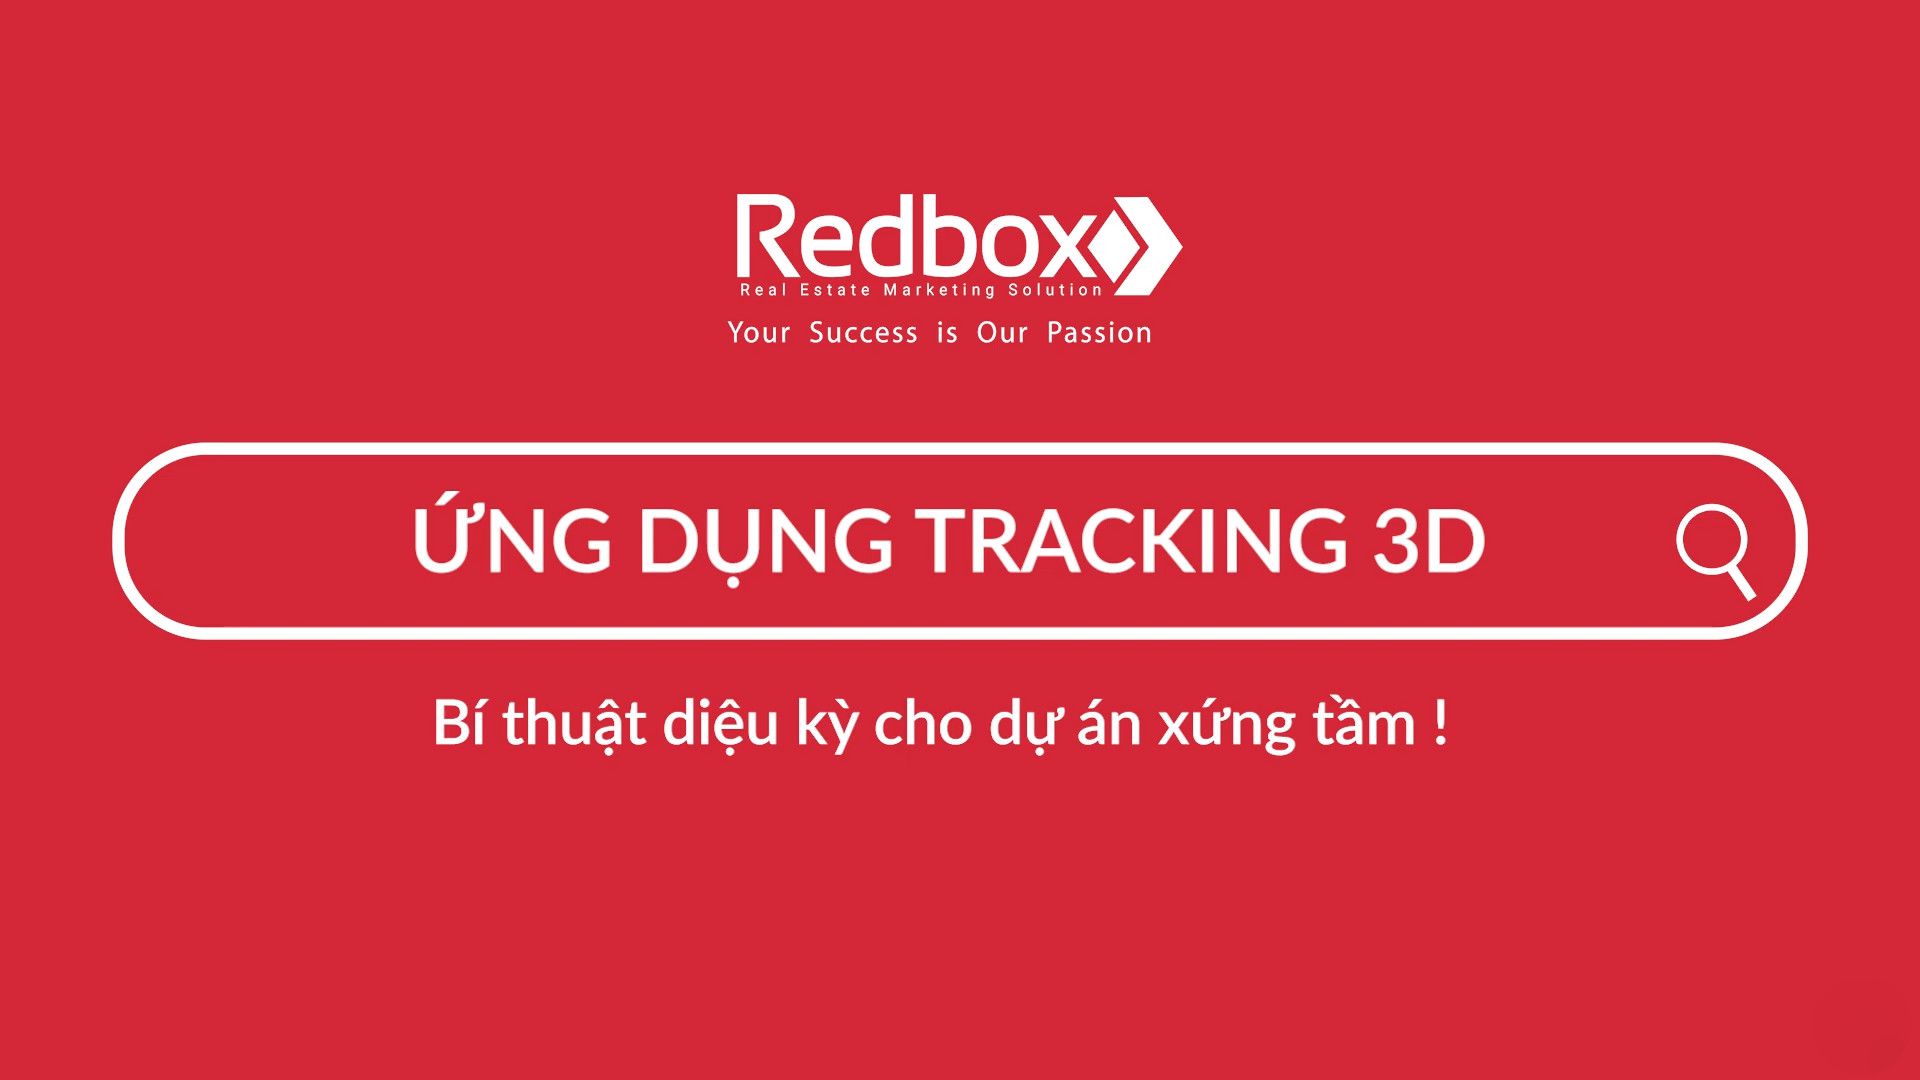 TRACKING 3D TRONG LÀM PHIM 3D - BÍ THUẬT DIỆU KỲ CHO NHỮNG DỰ ÁN XỨNG TẦM!